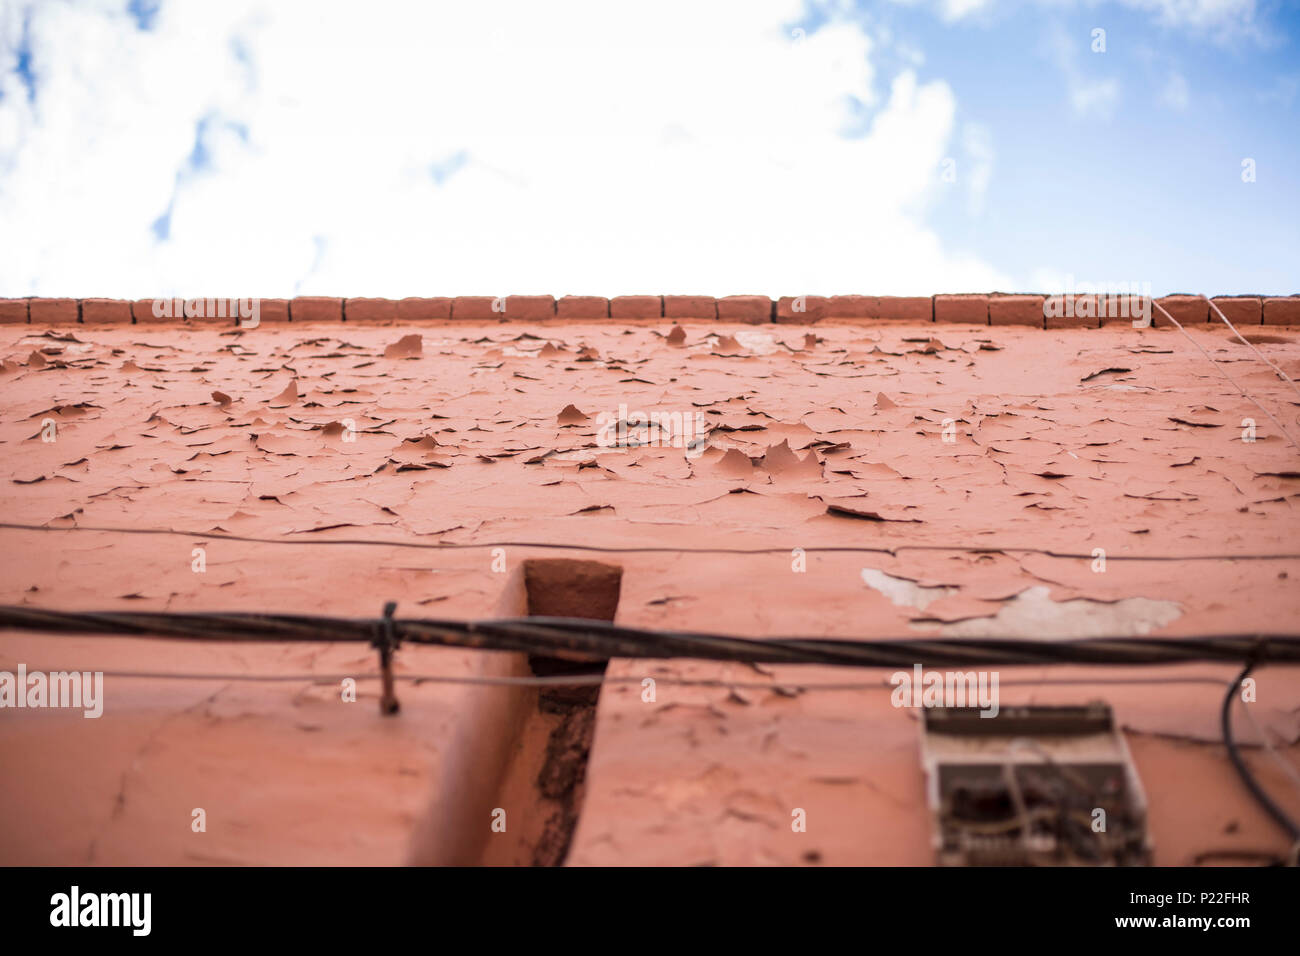 Marokko, Marrakesch, altes Haus Fassade, brüchigen Oberfläche, blätterte Farbe, close-up Stockfoto